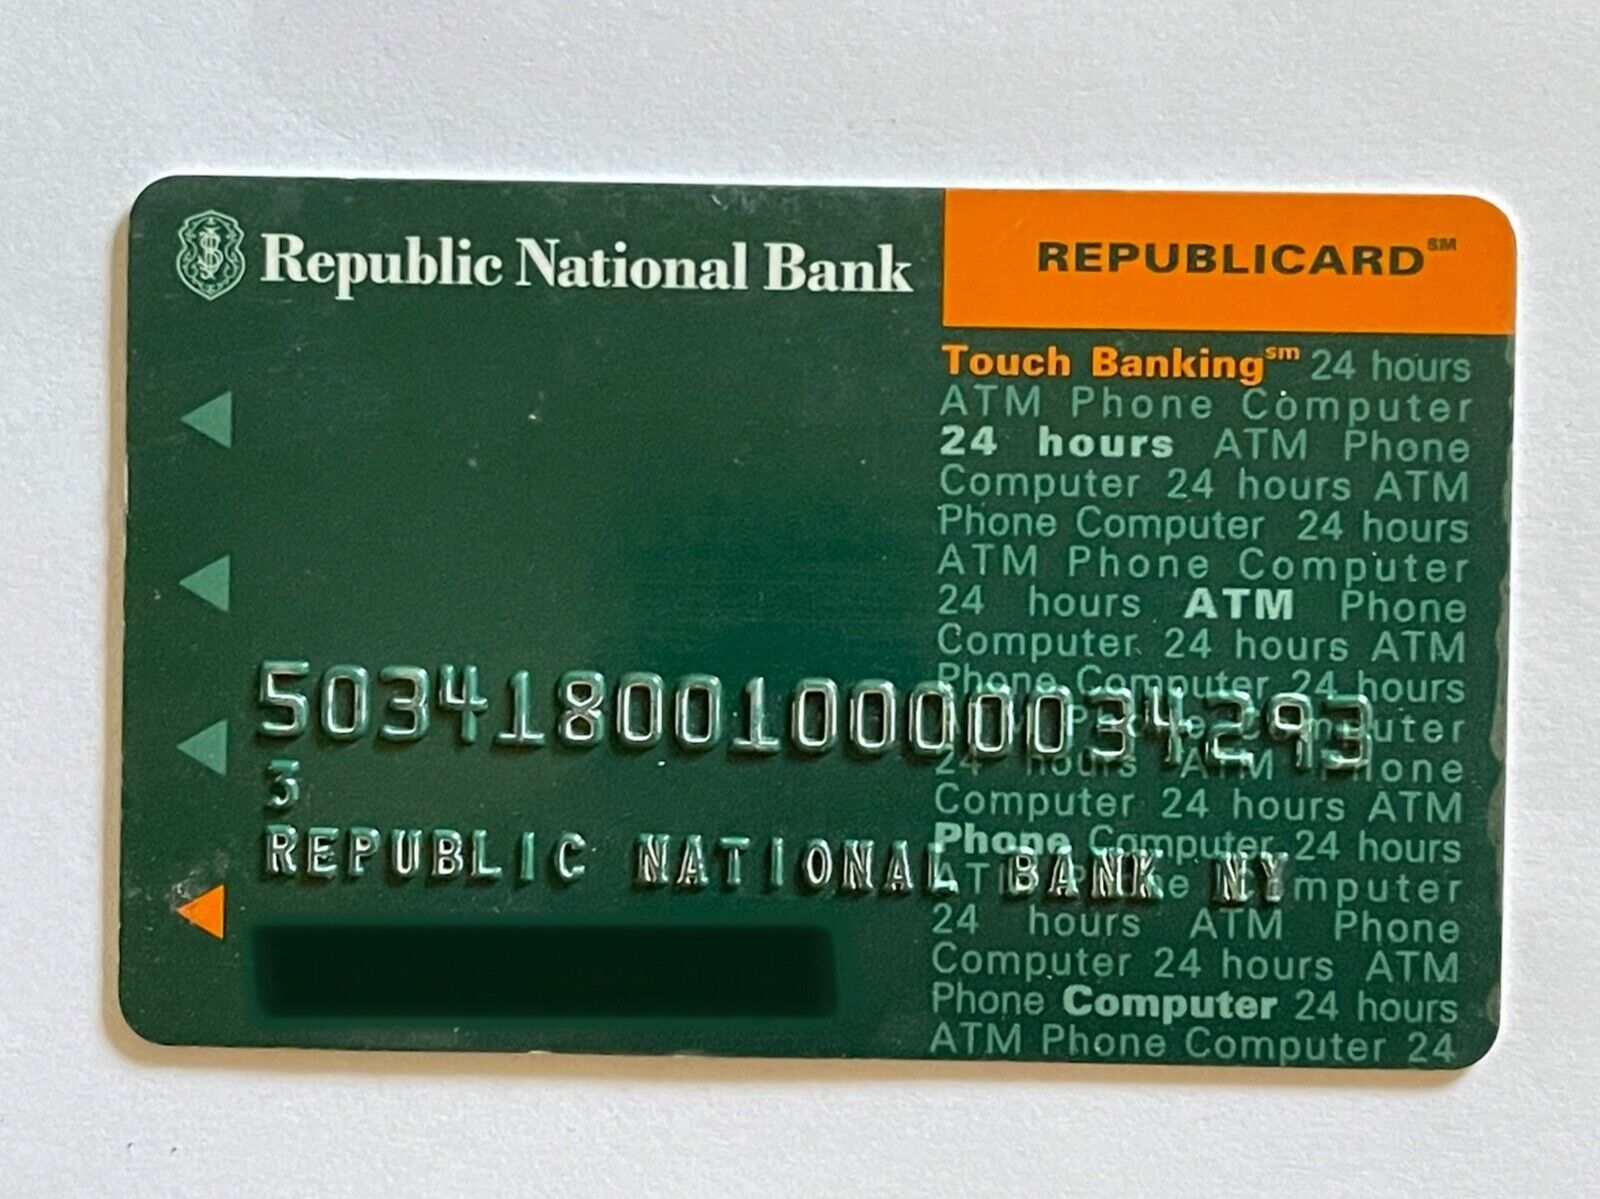 REPUBLIC NATIONAL BANK New York REPUBLICARD ATM Card - Collectible